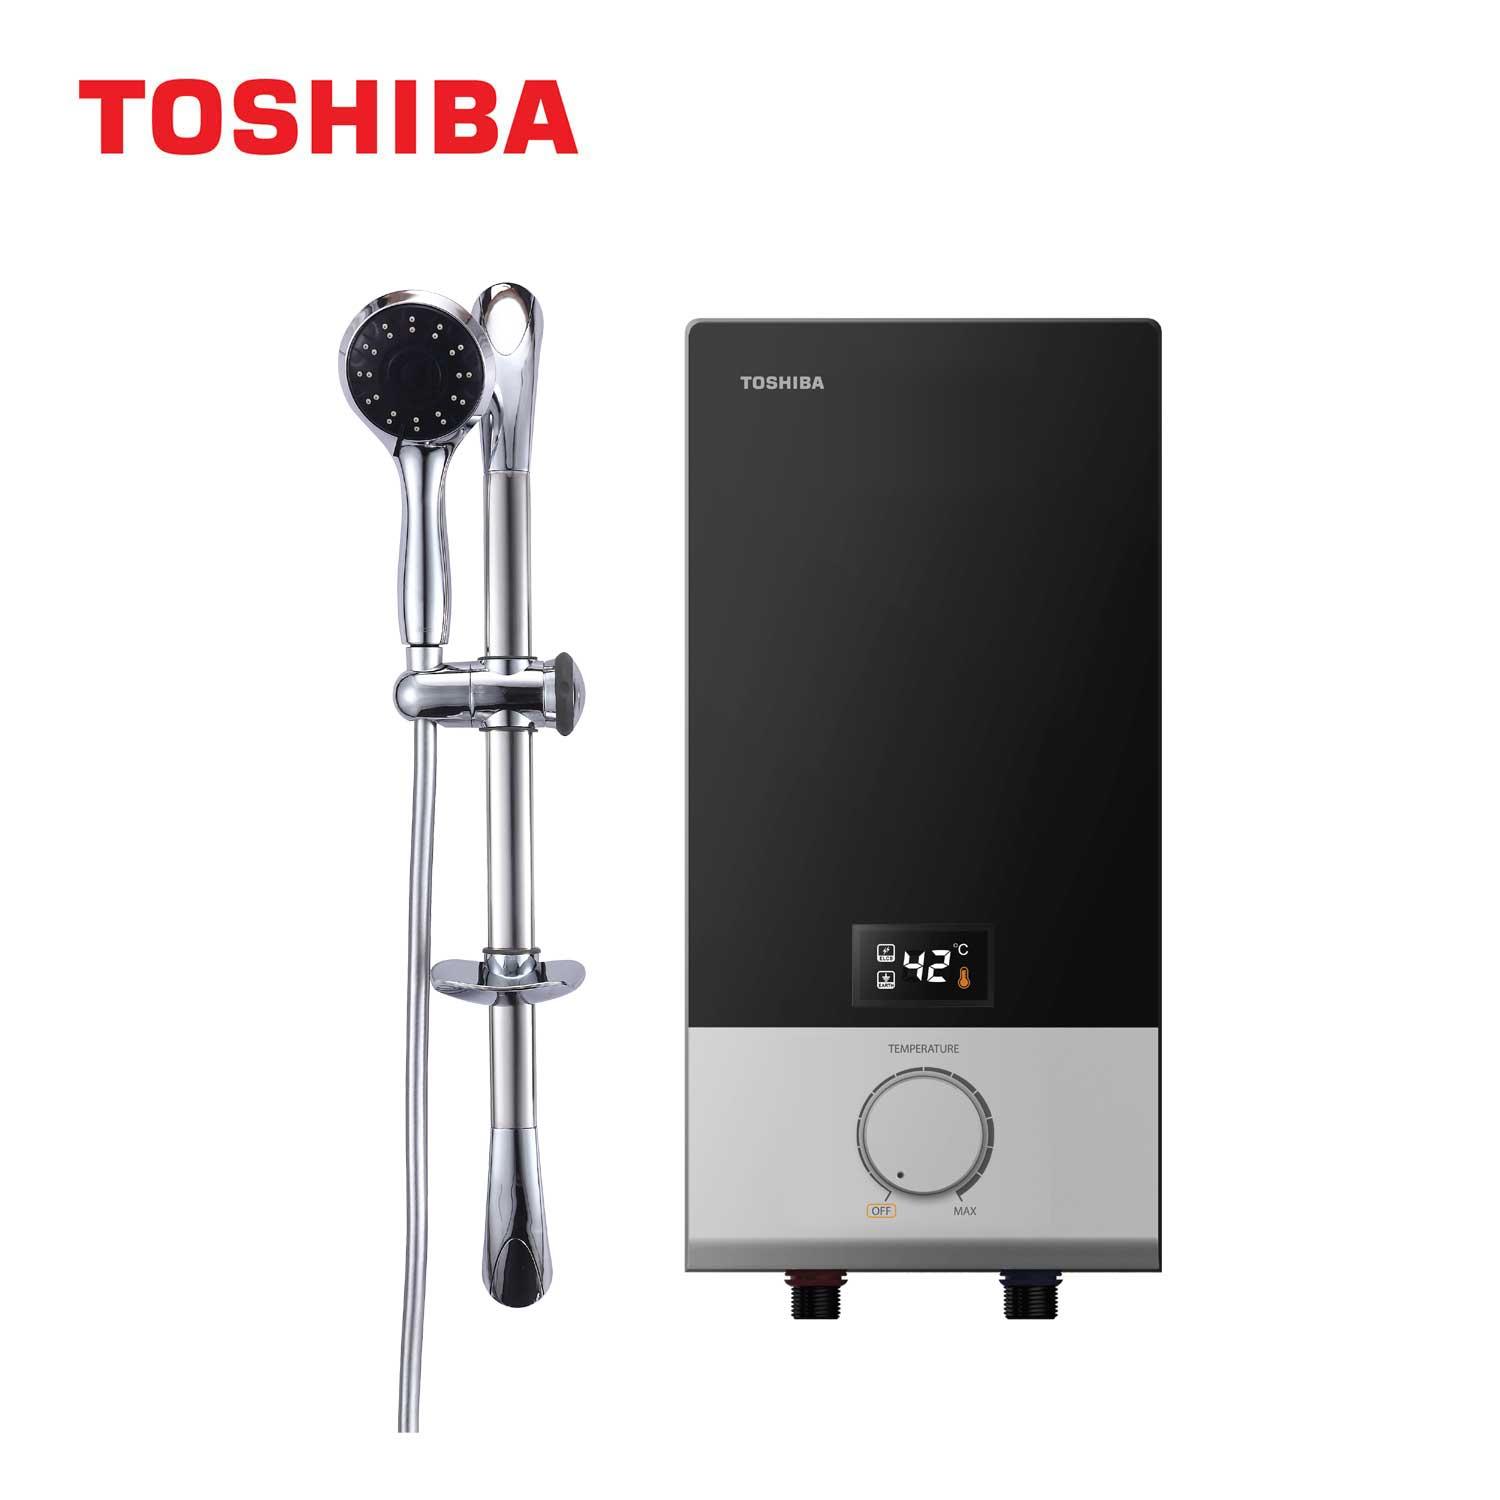 Toshiba เครื่องทำน้ำอุ่น 3,800 วัตต์ รุ่น DSK38ES5KB-(สีดำ)